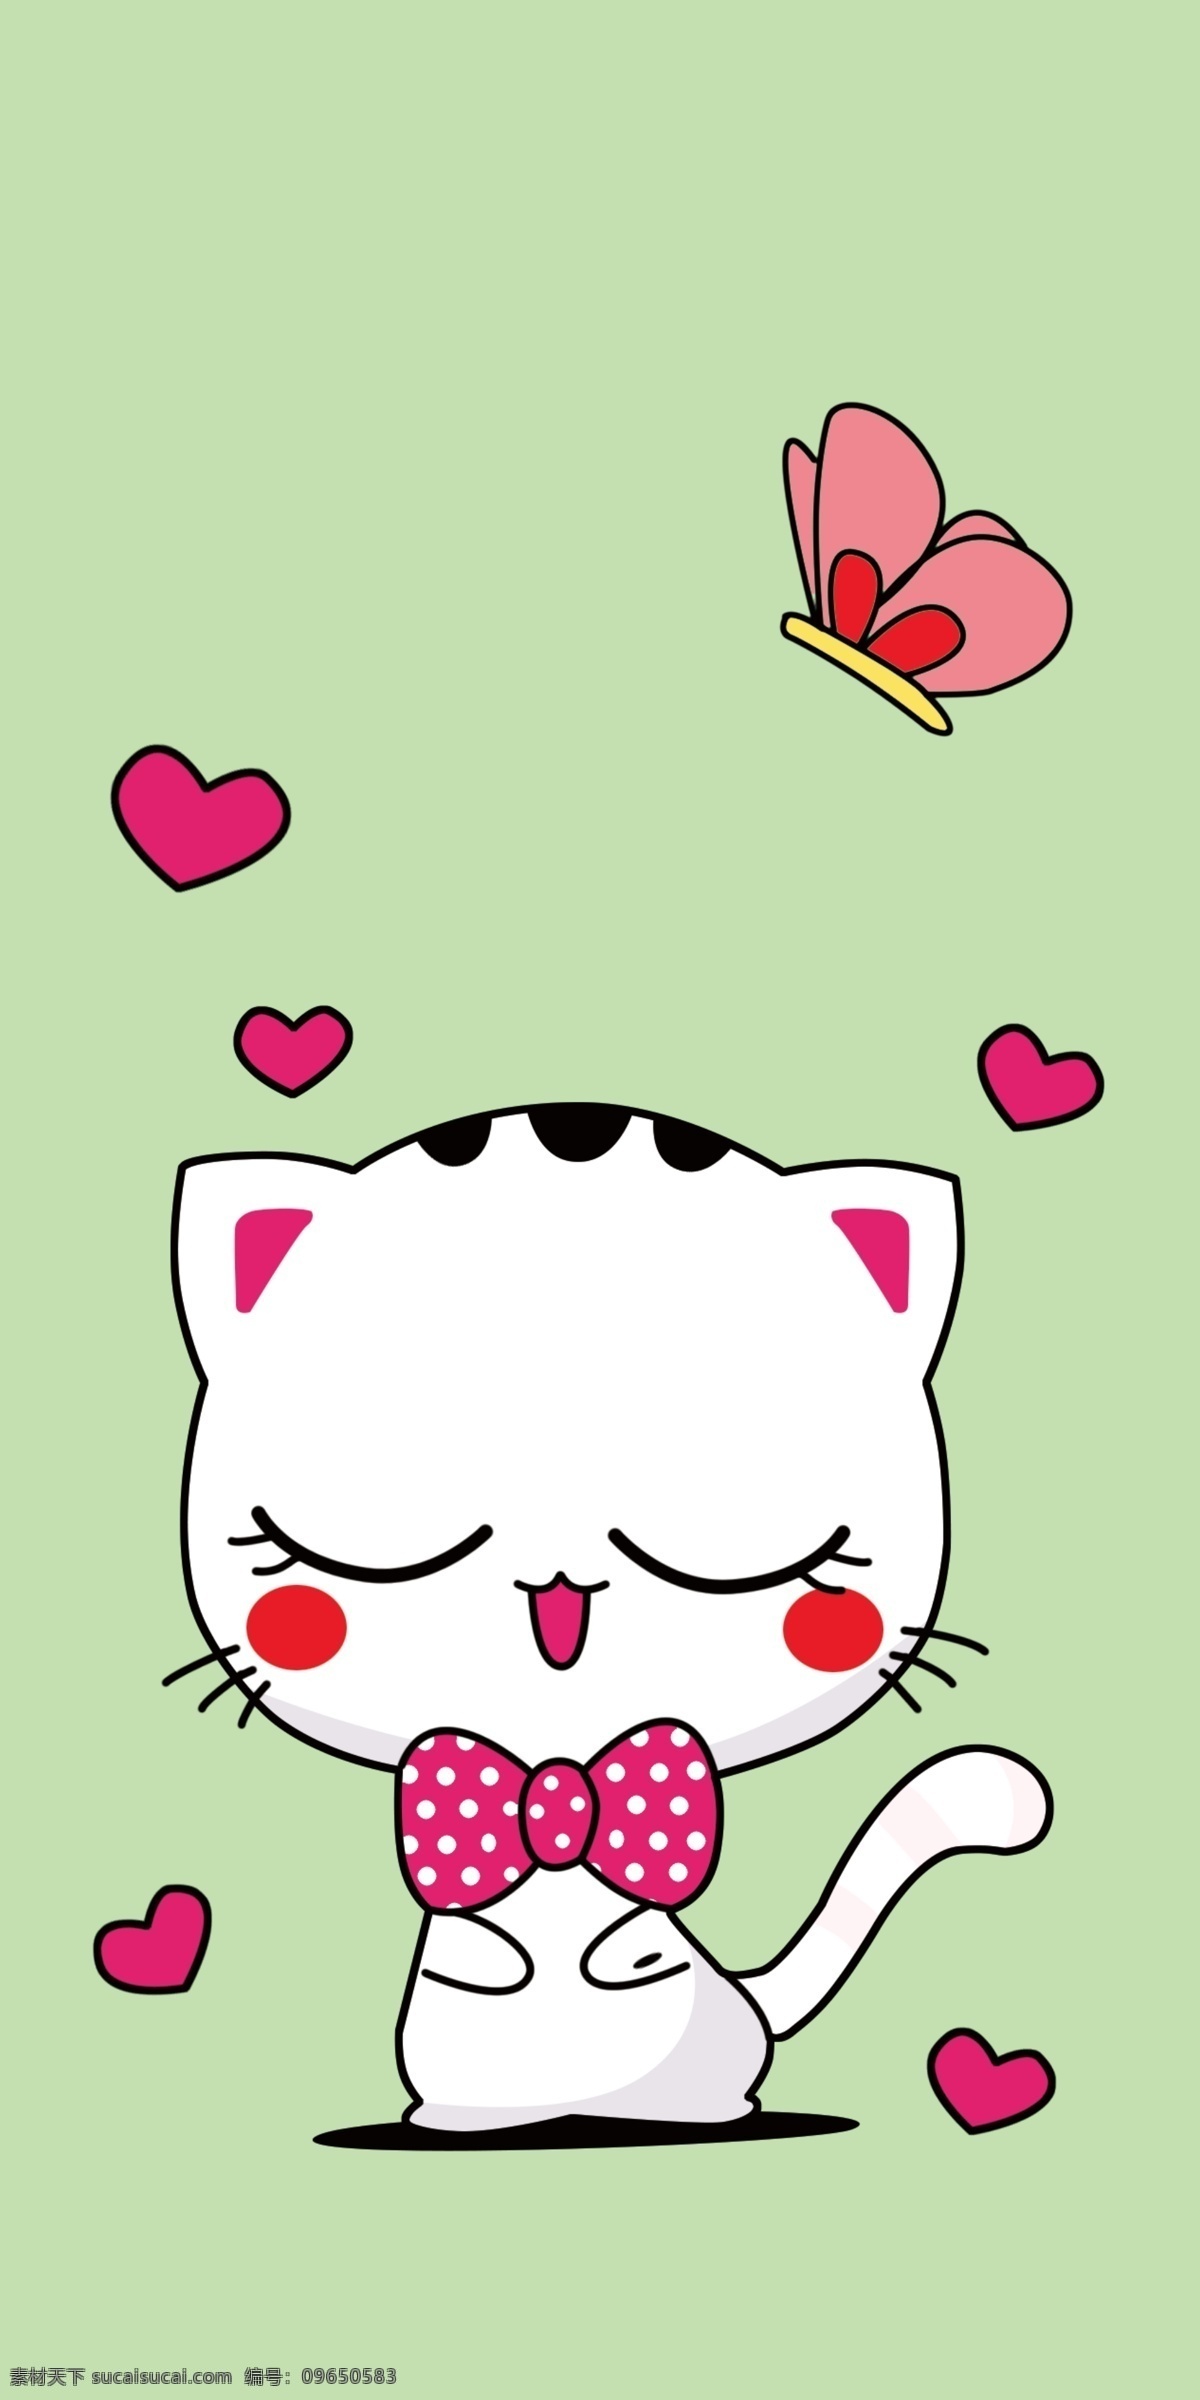 可爱手机壳 猫咪 卡通小猫咪 手机壳设计 卡通手机壳 动漫动画 动漫人物